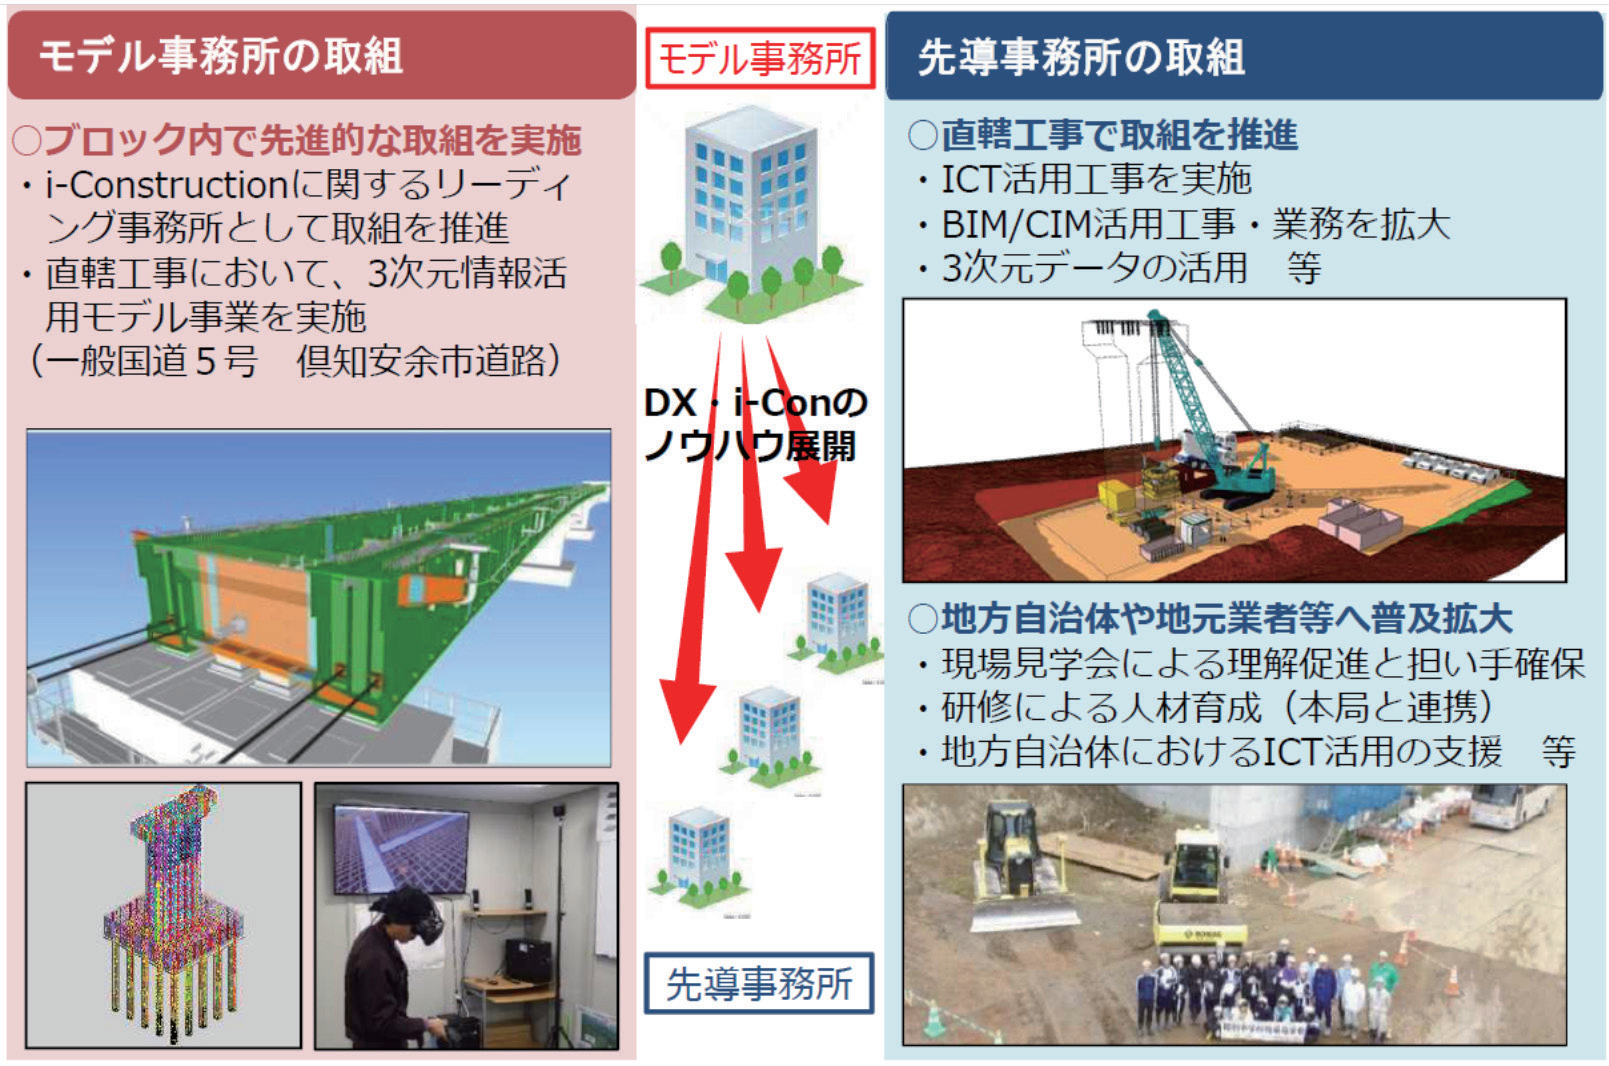 北海道開発局インフラDX･i-Construction 先導事務所の設置